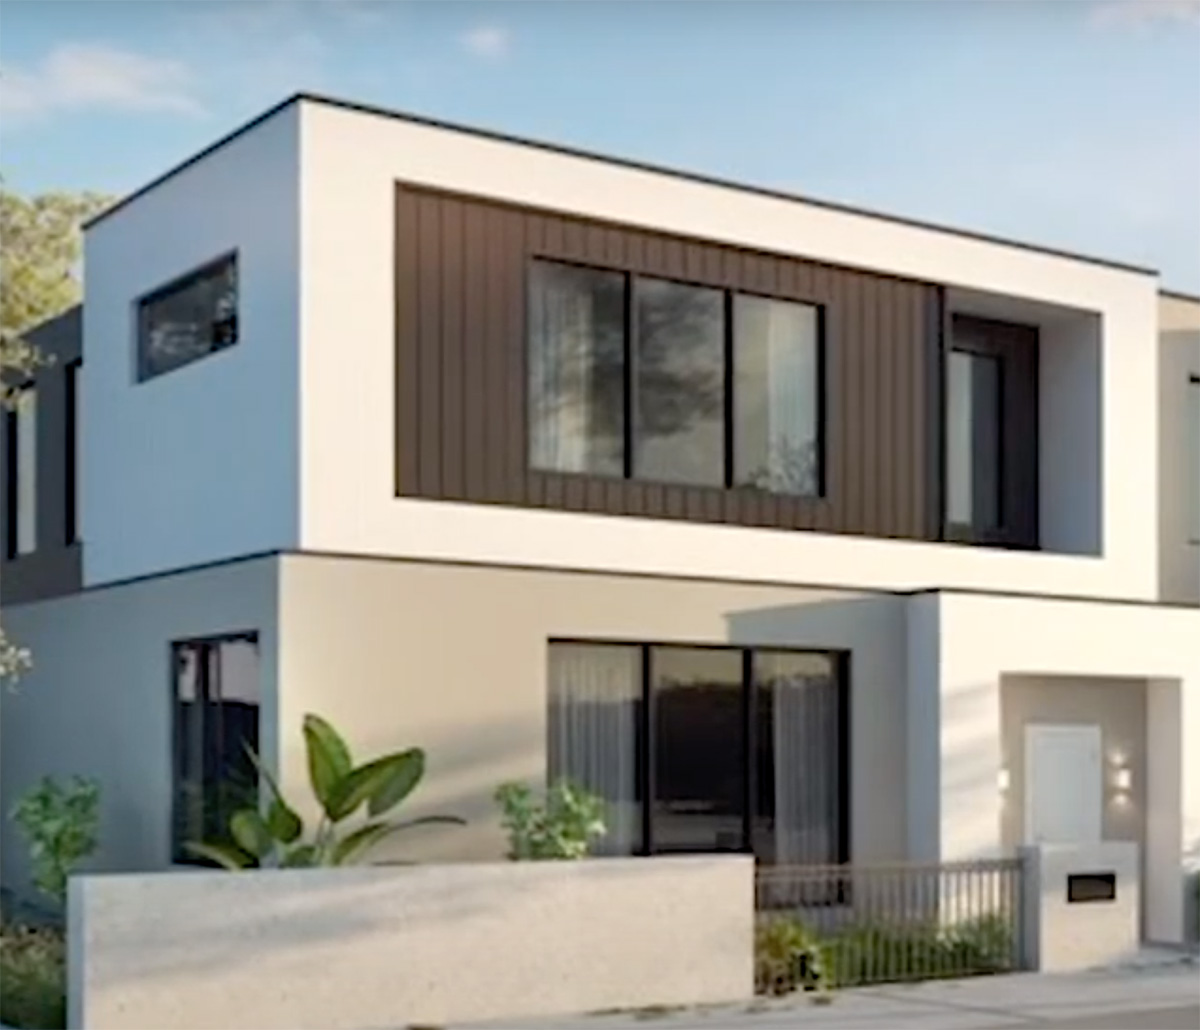 MiTek 3D Modeling Service - 3D-Rendering eines zweistöckigen modernen Hauses